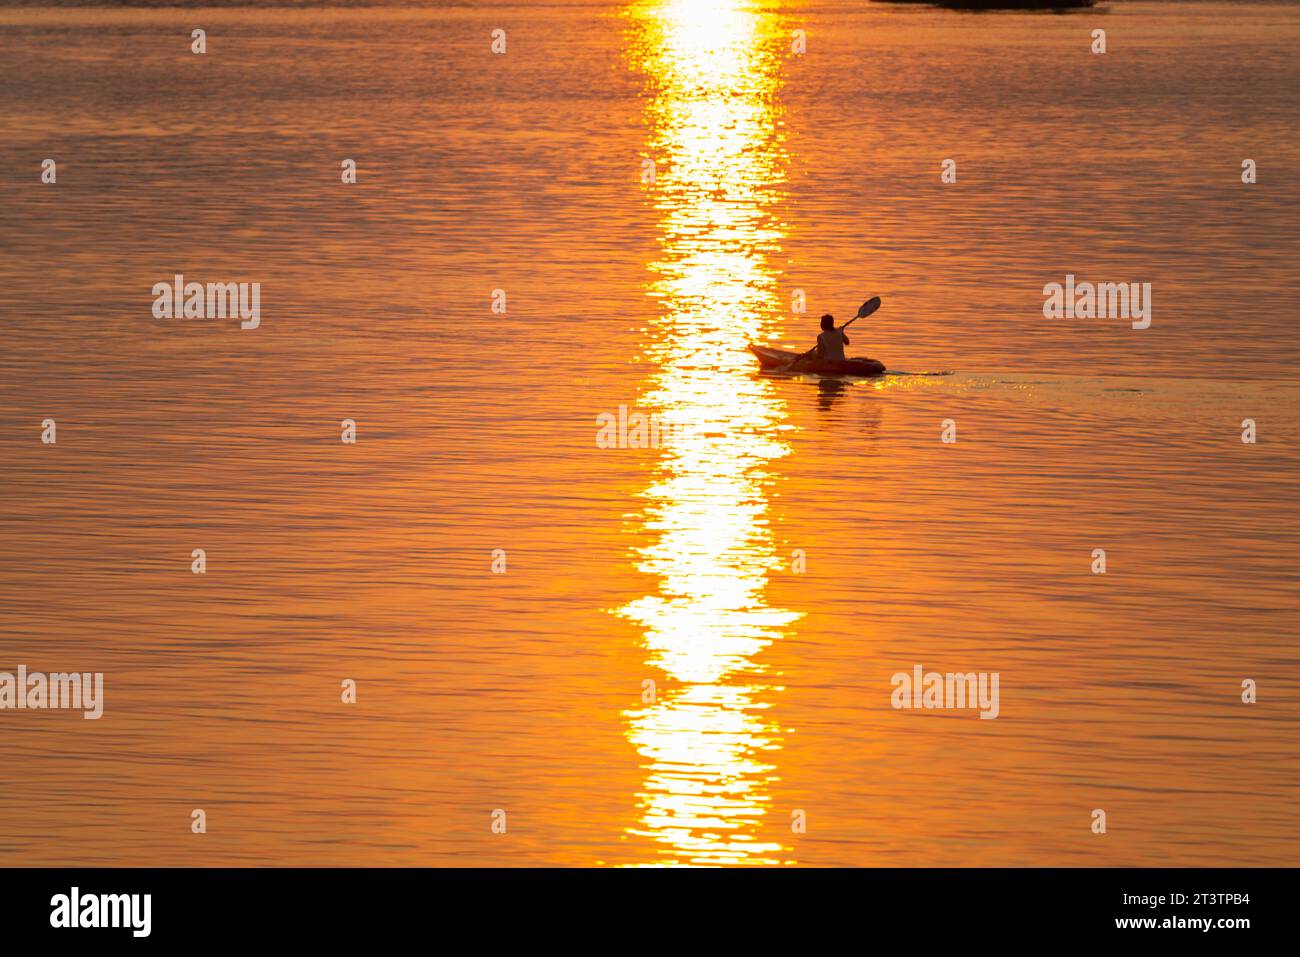 Silhouette di una persona in kayak, pagaiando lungo le calme acque del Mekong, nell'arcipelago si Phan Don, attraverso raggi di luce dorata riflessa Foto Stock